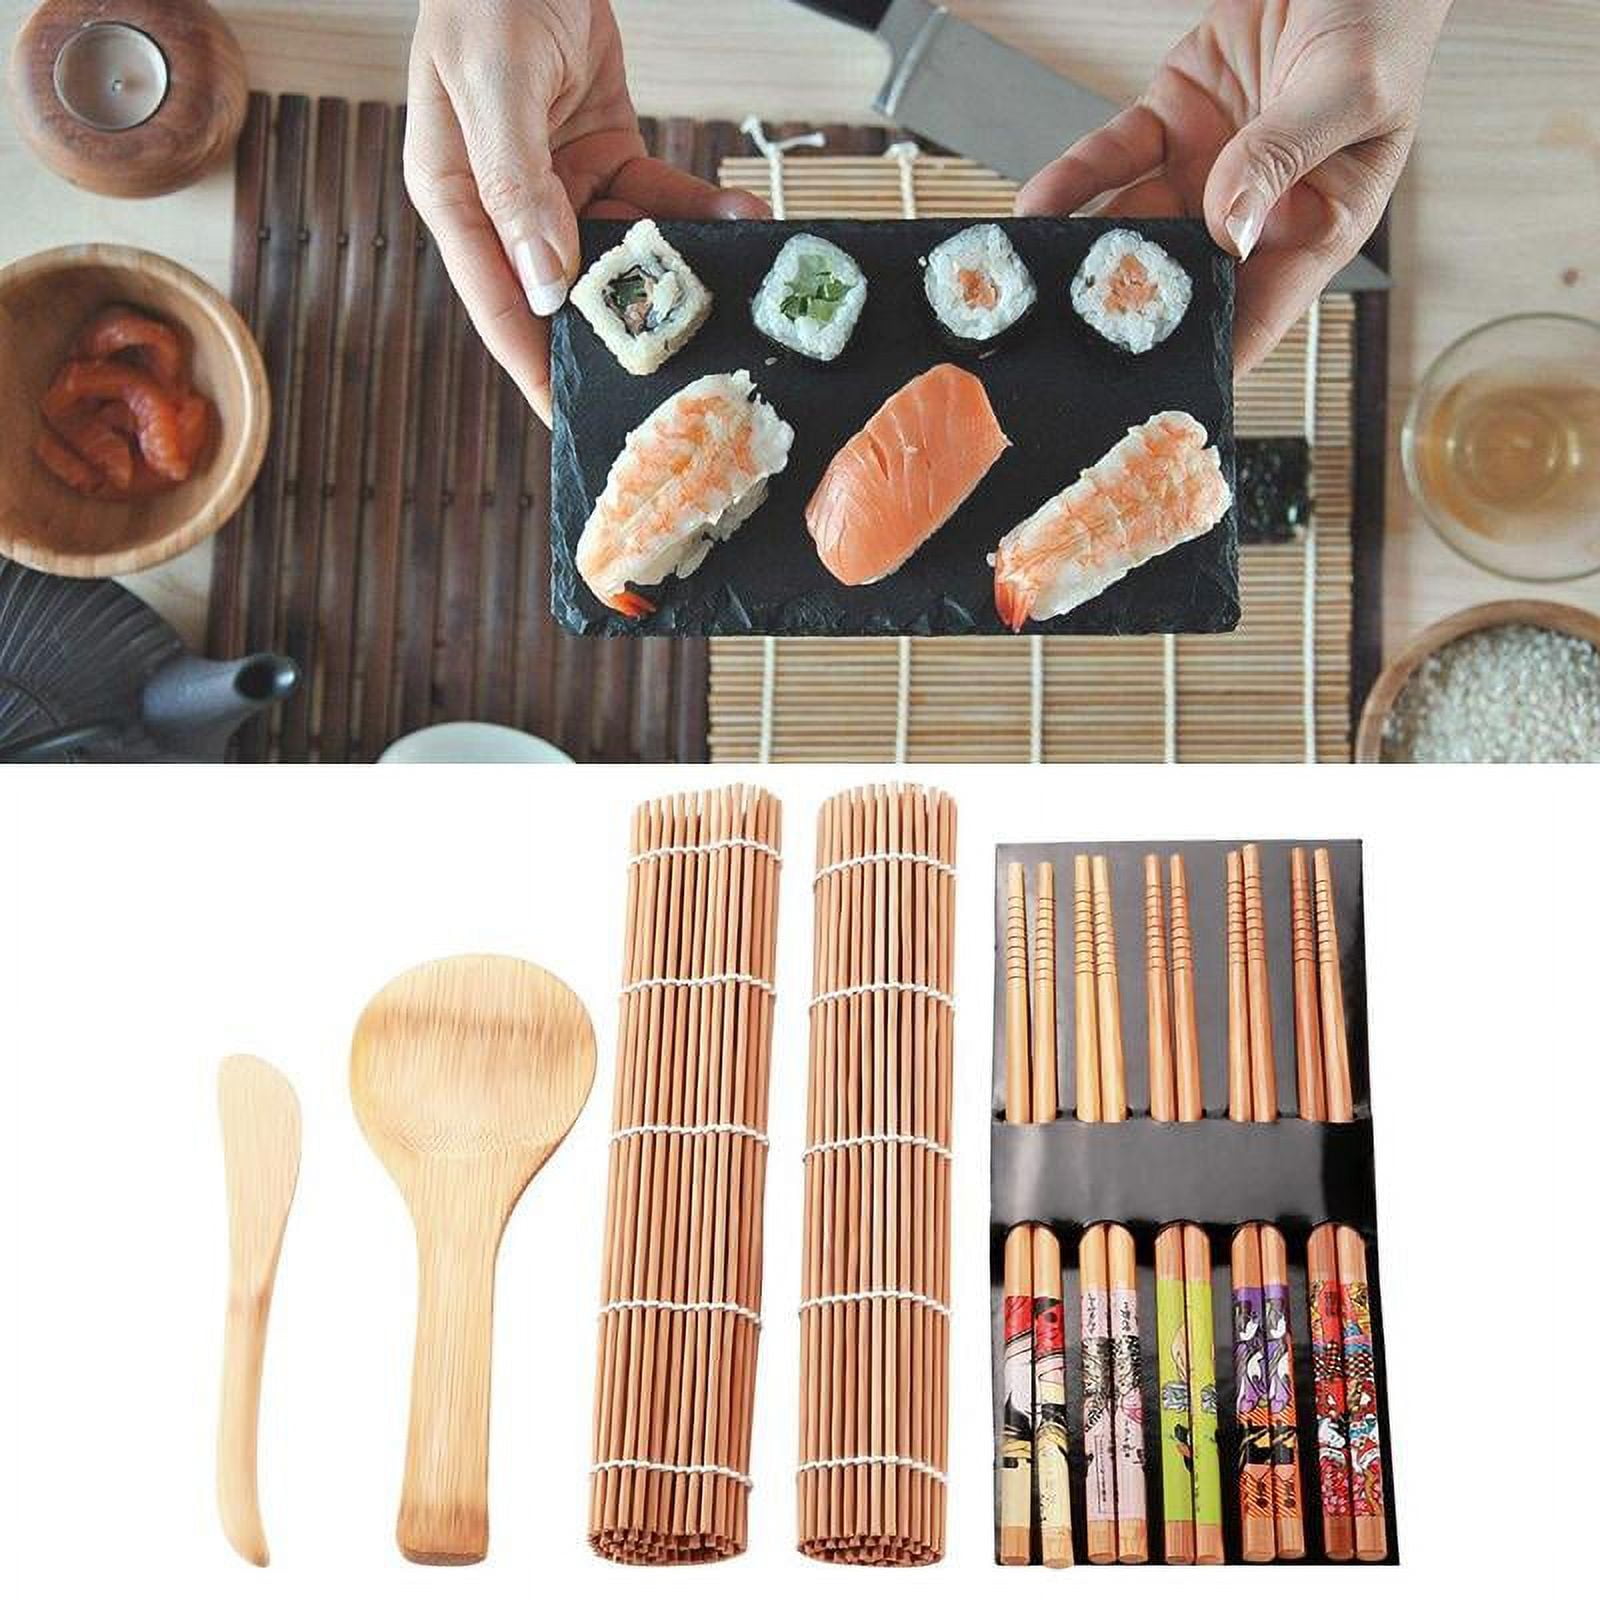 GAWIRO Sushi Making Kit 13 Pieces Pro Sushi Kit Chef's sushi Knife with  Sushi Cutting Mold-Avocado Slicer-Basting Brush-Spatula & Serving Fork  Perfect